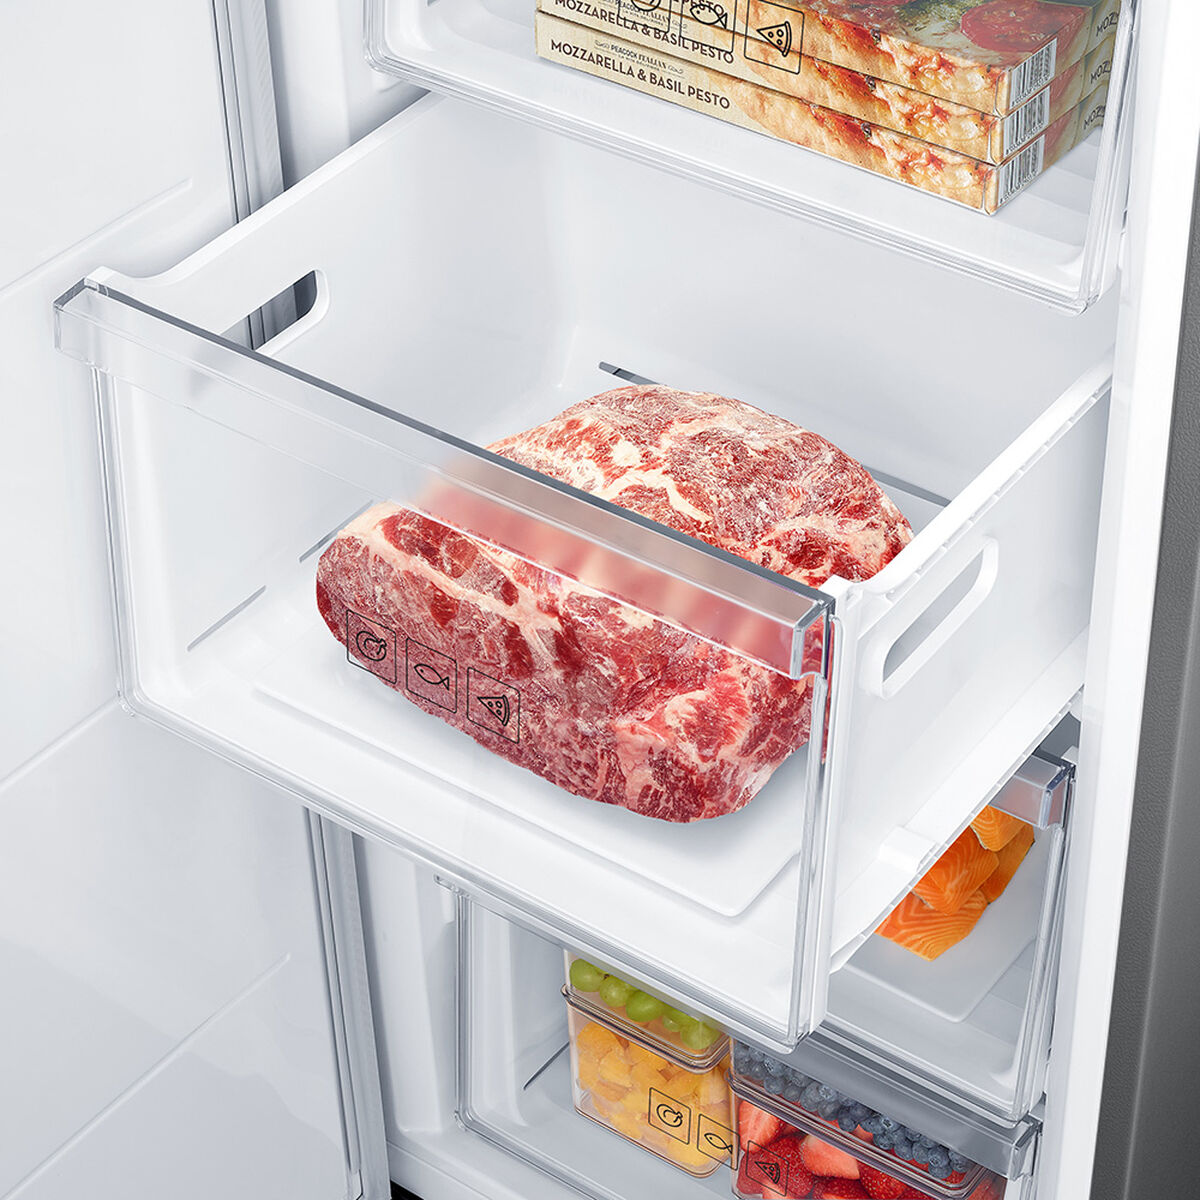 Refrigerador/Congelador 1 Door Samsung Bespoke Flex 315 lts con Slim Ice maker